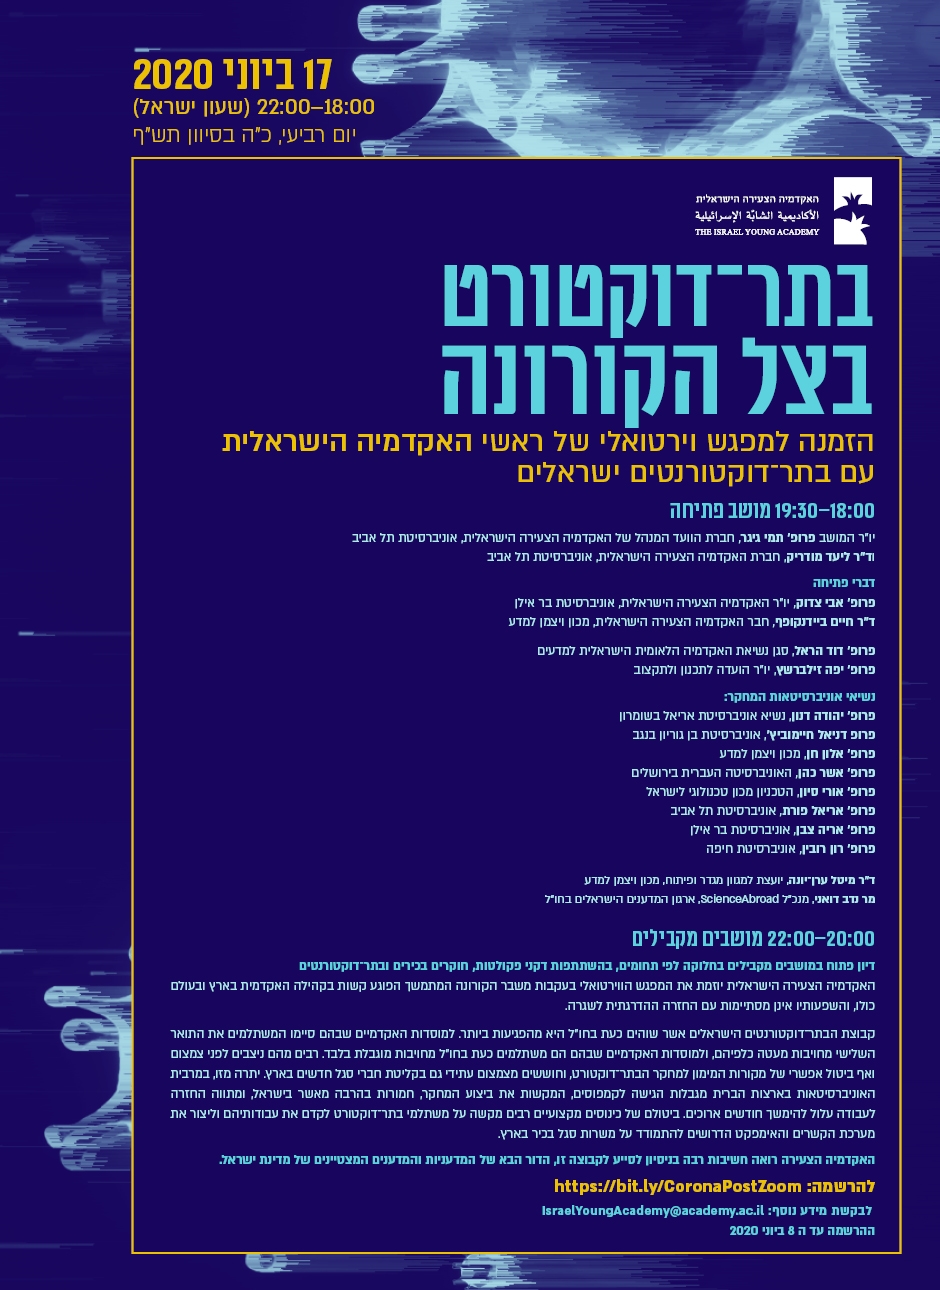 כינוס וירטואלי מבית האקדמיה הצעירה הישראלית: בתר-דוקטורט בצל הקורונה